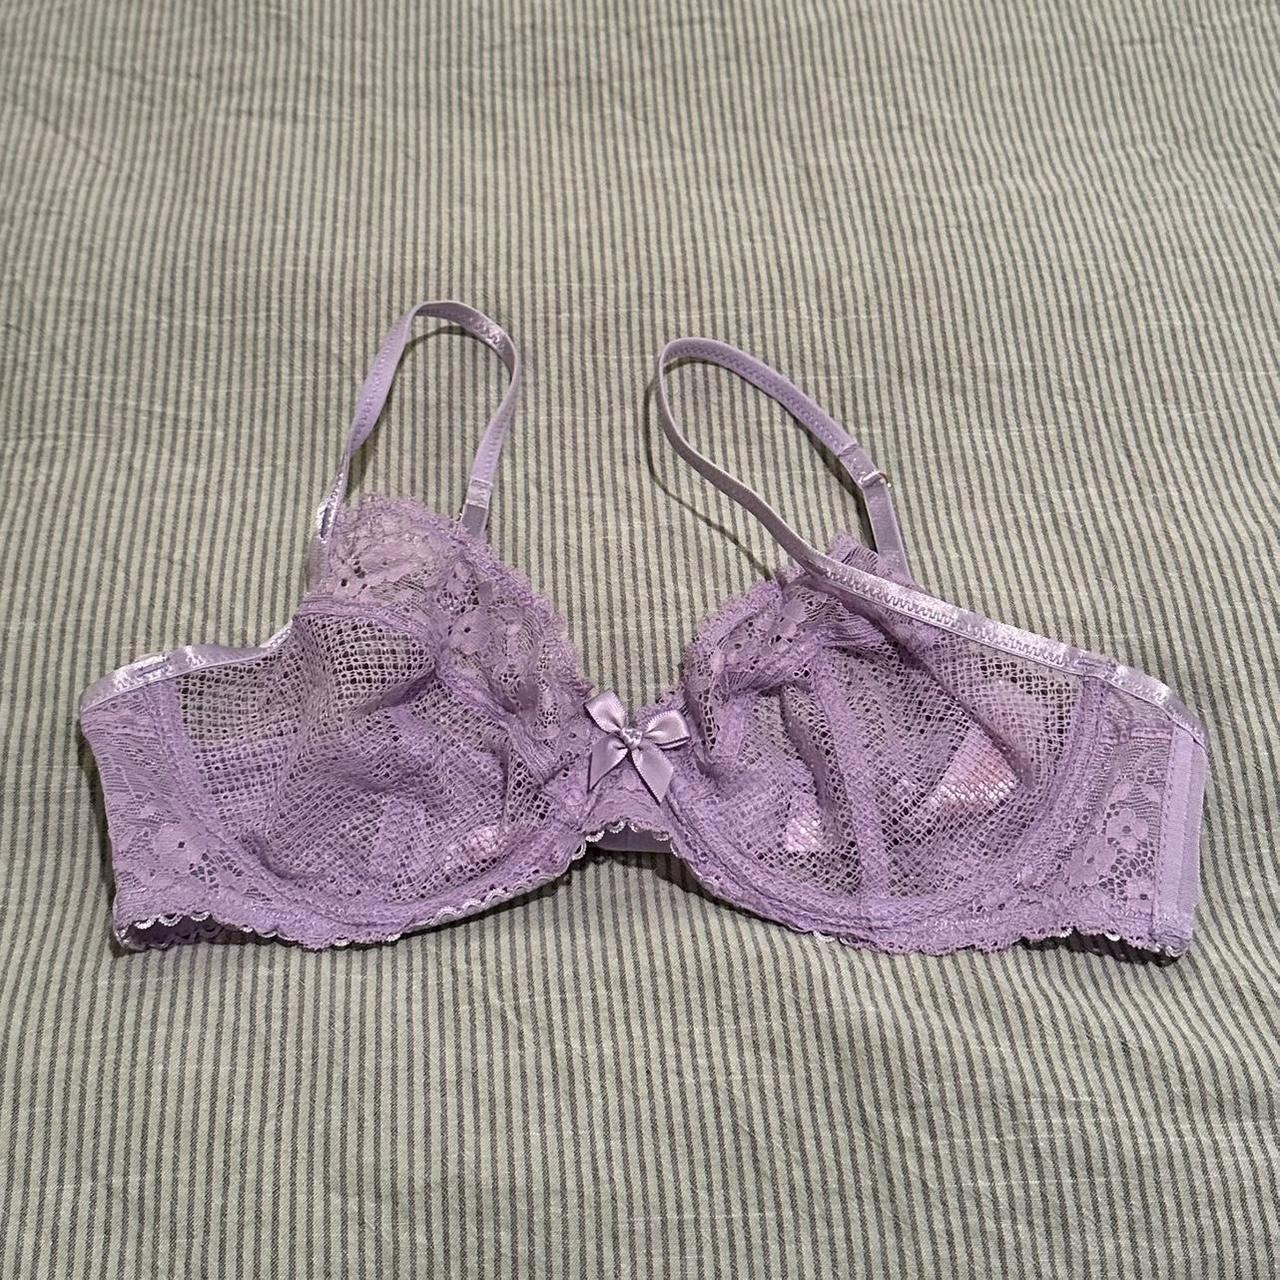 Purple lace bra size 32DD front closing - Depop